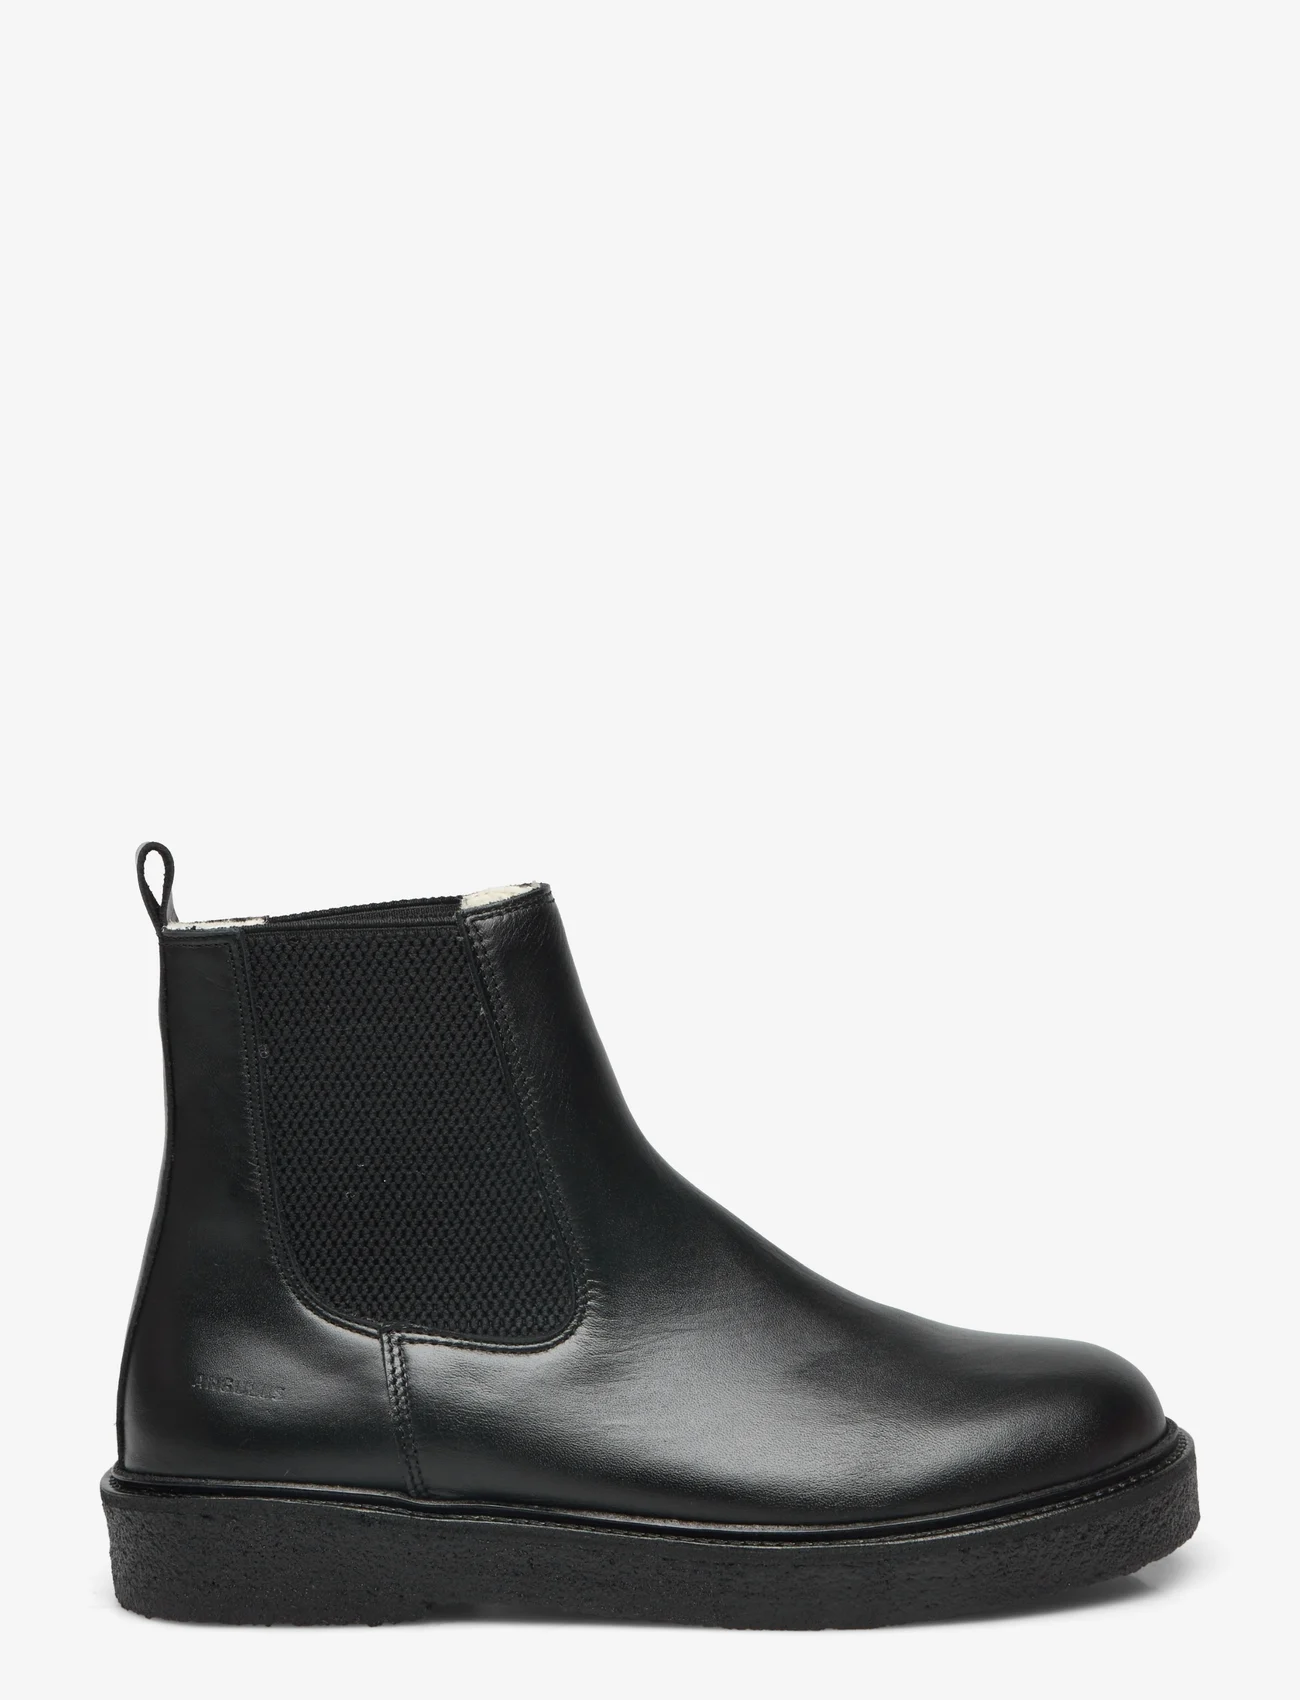 ANGULUS - Boots - flat - chelsea-saapad - 1604/053 black/black - 1